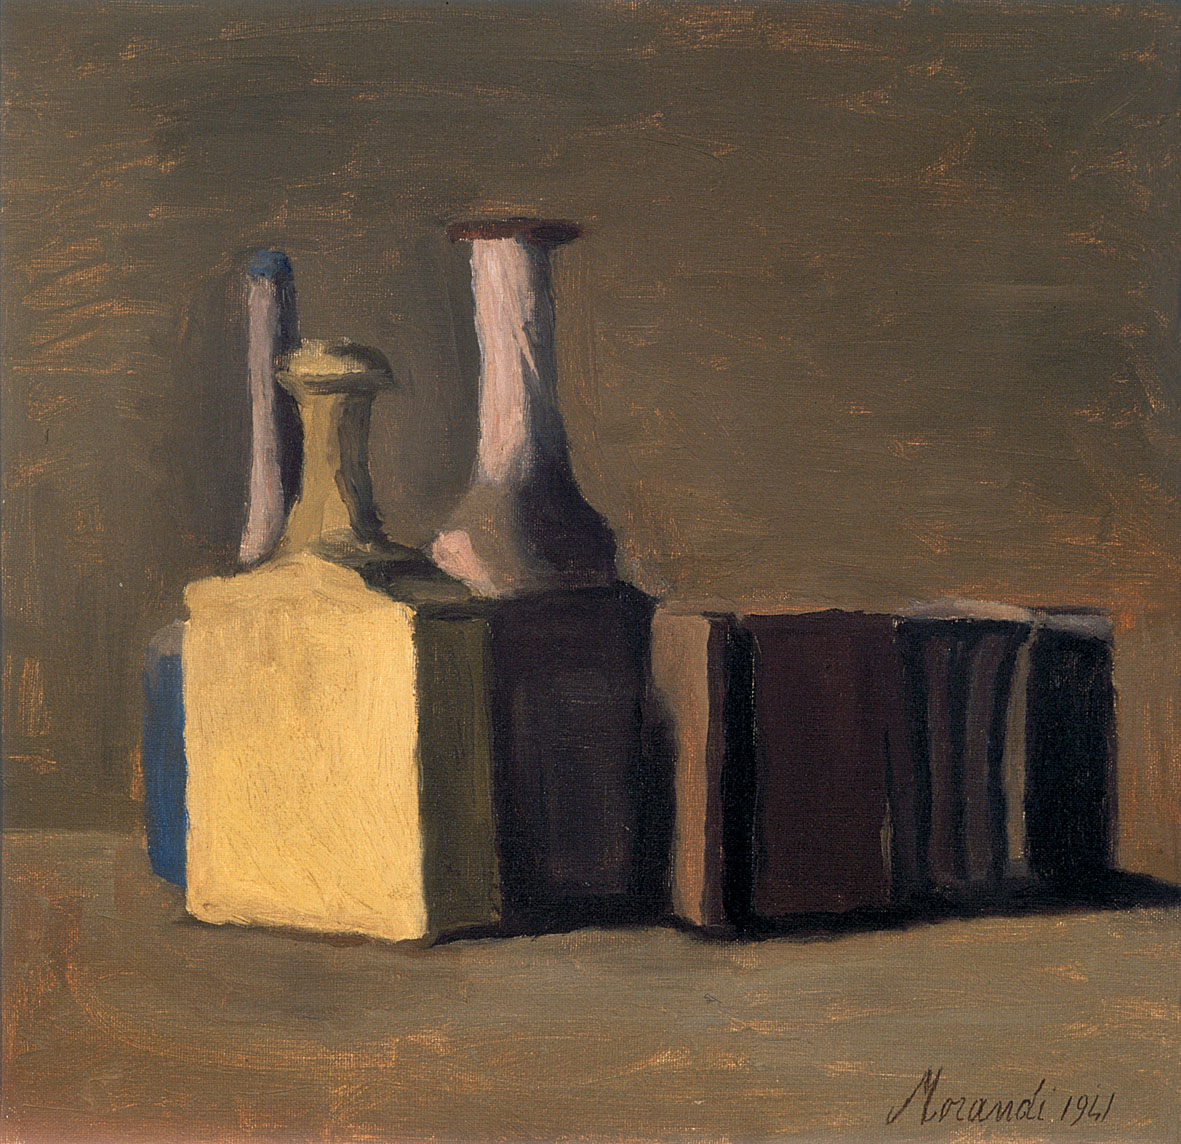 Giorgio Morandi, Natura morta, olio su tela, cm 44,50 x 46,50, 1941. Fondazione Cassa di Risparmio di Verona Vicenza Belluno e Ancona